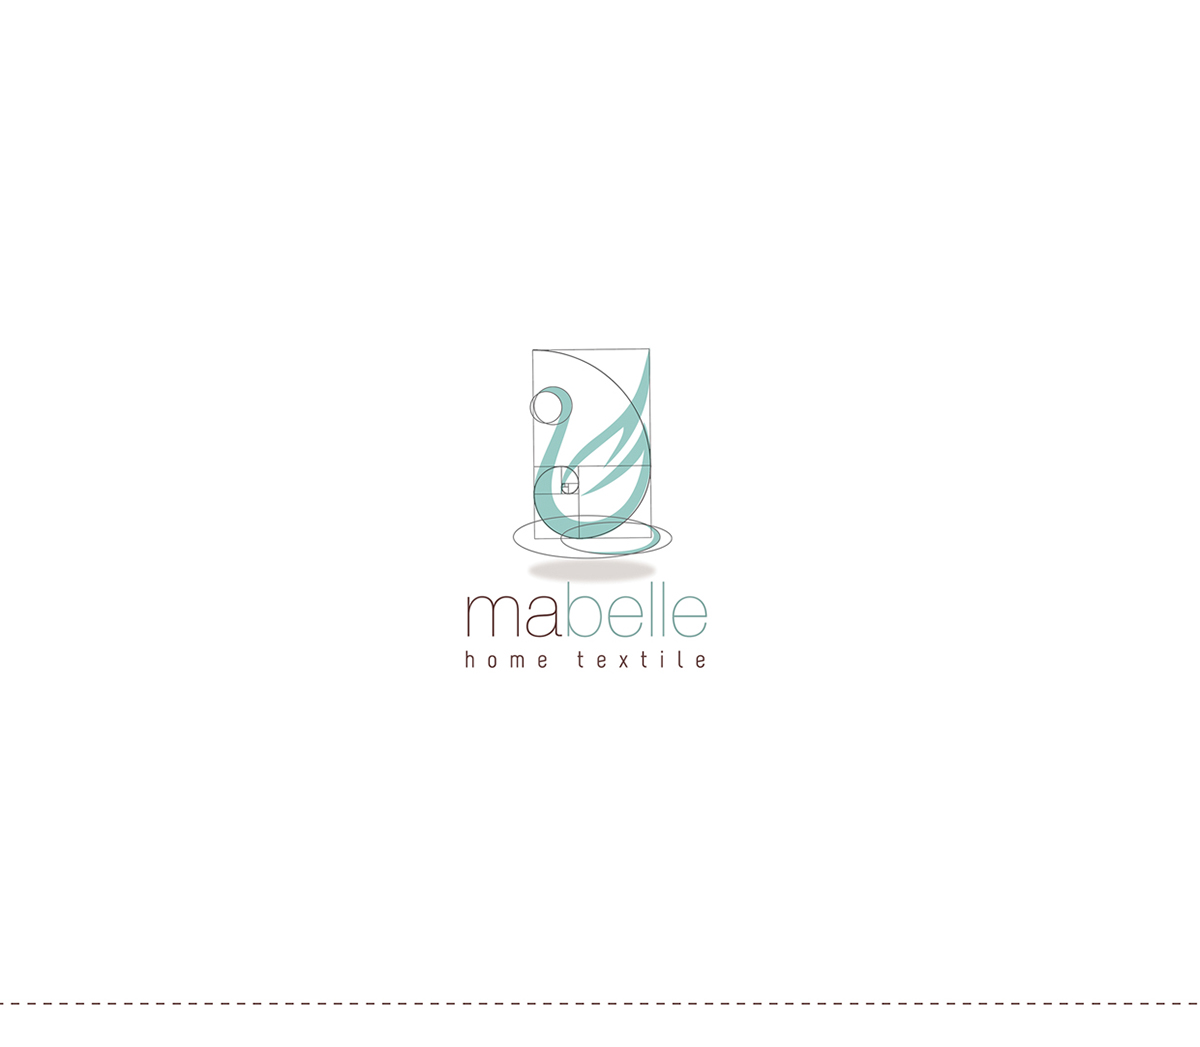 home textile logo